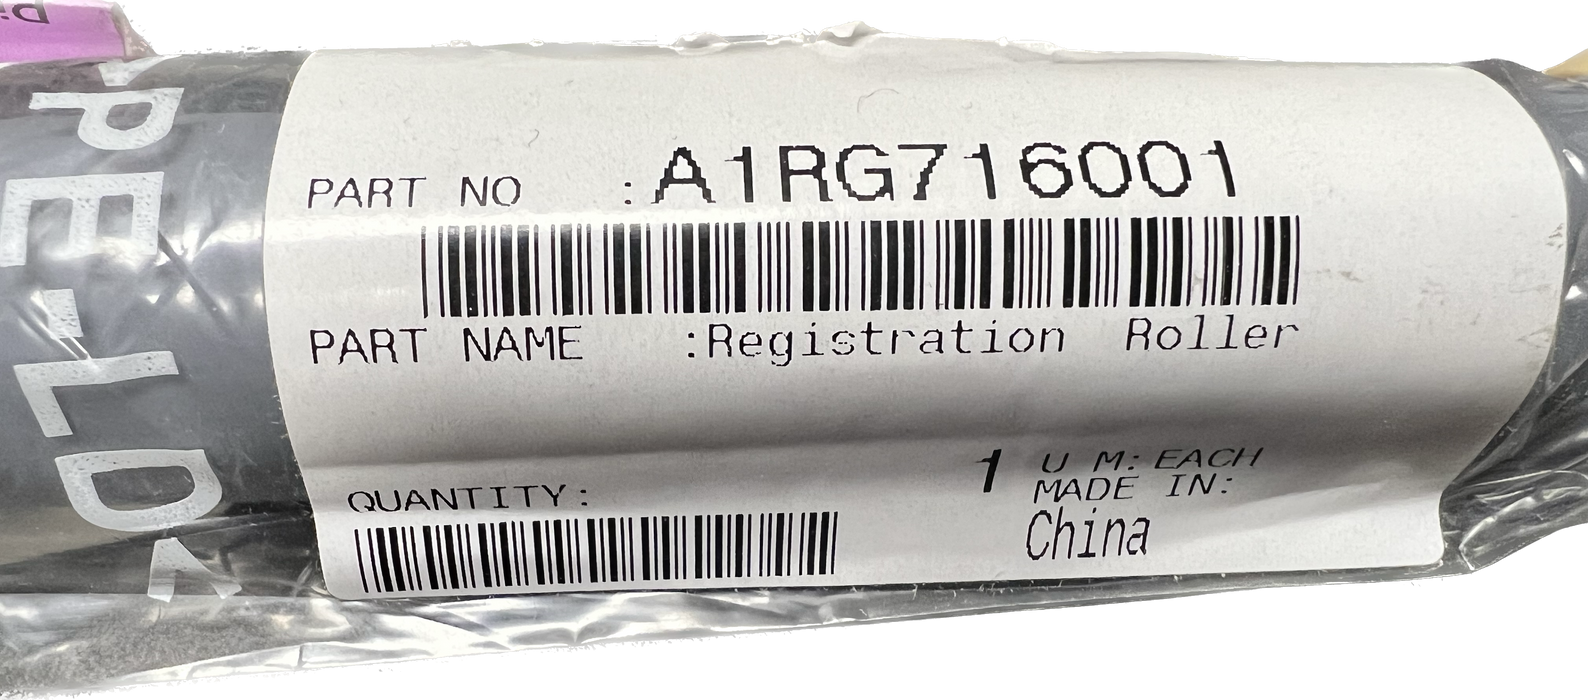 Konica Minolta Registration Roller | A1RG716001